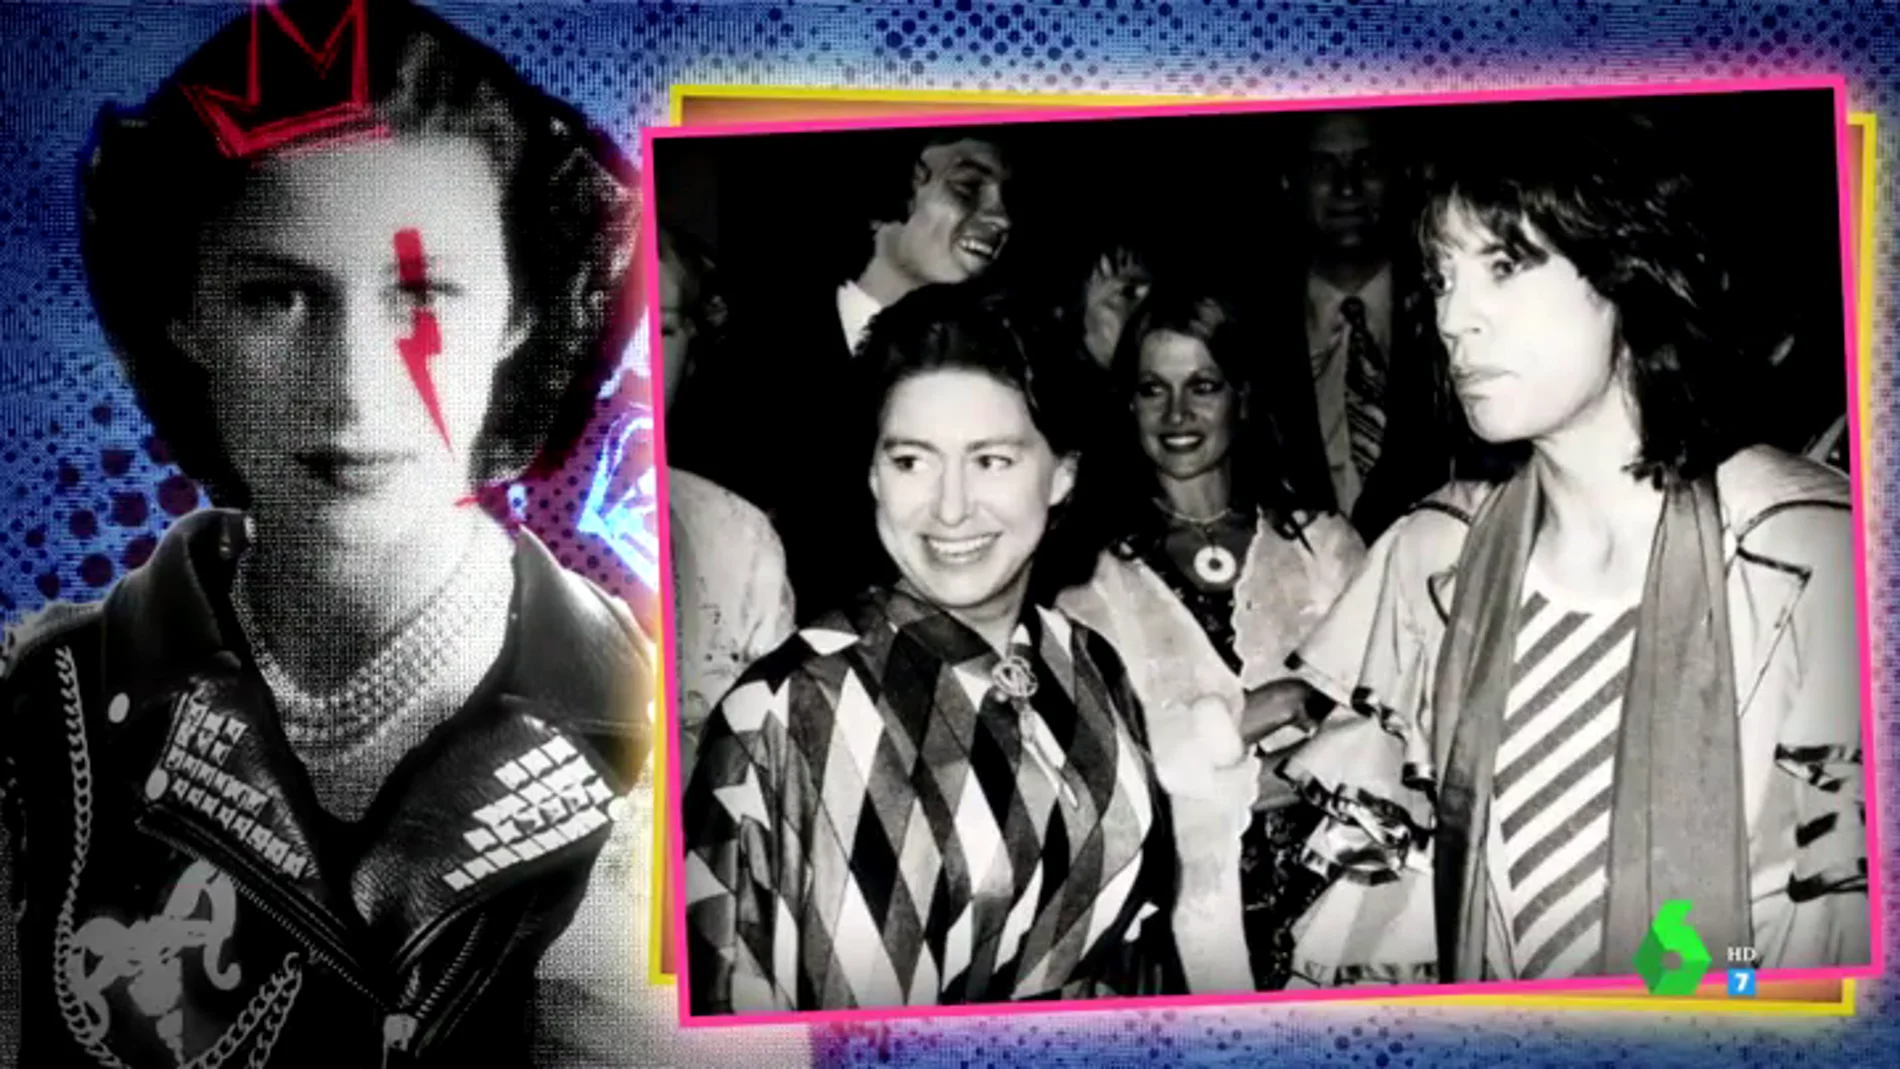 La apasionante vida de la princesa Margarita: de su rebeldía a su romance con Mick Jagger, con canción de los Rolling incluida